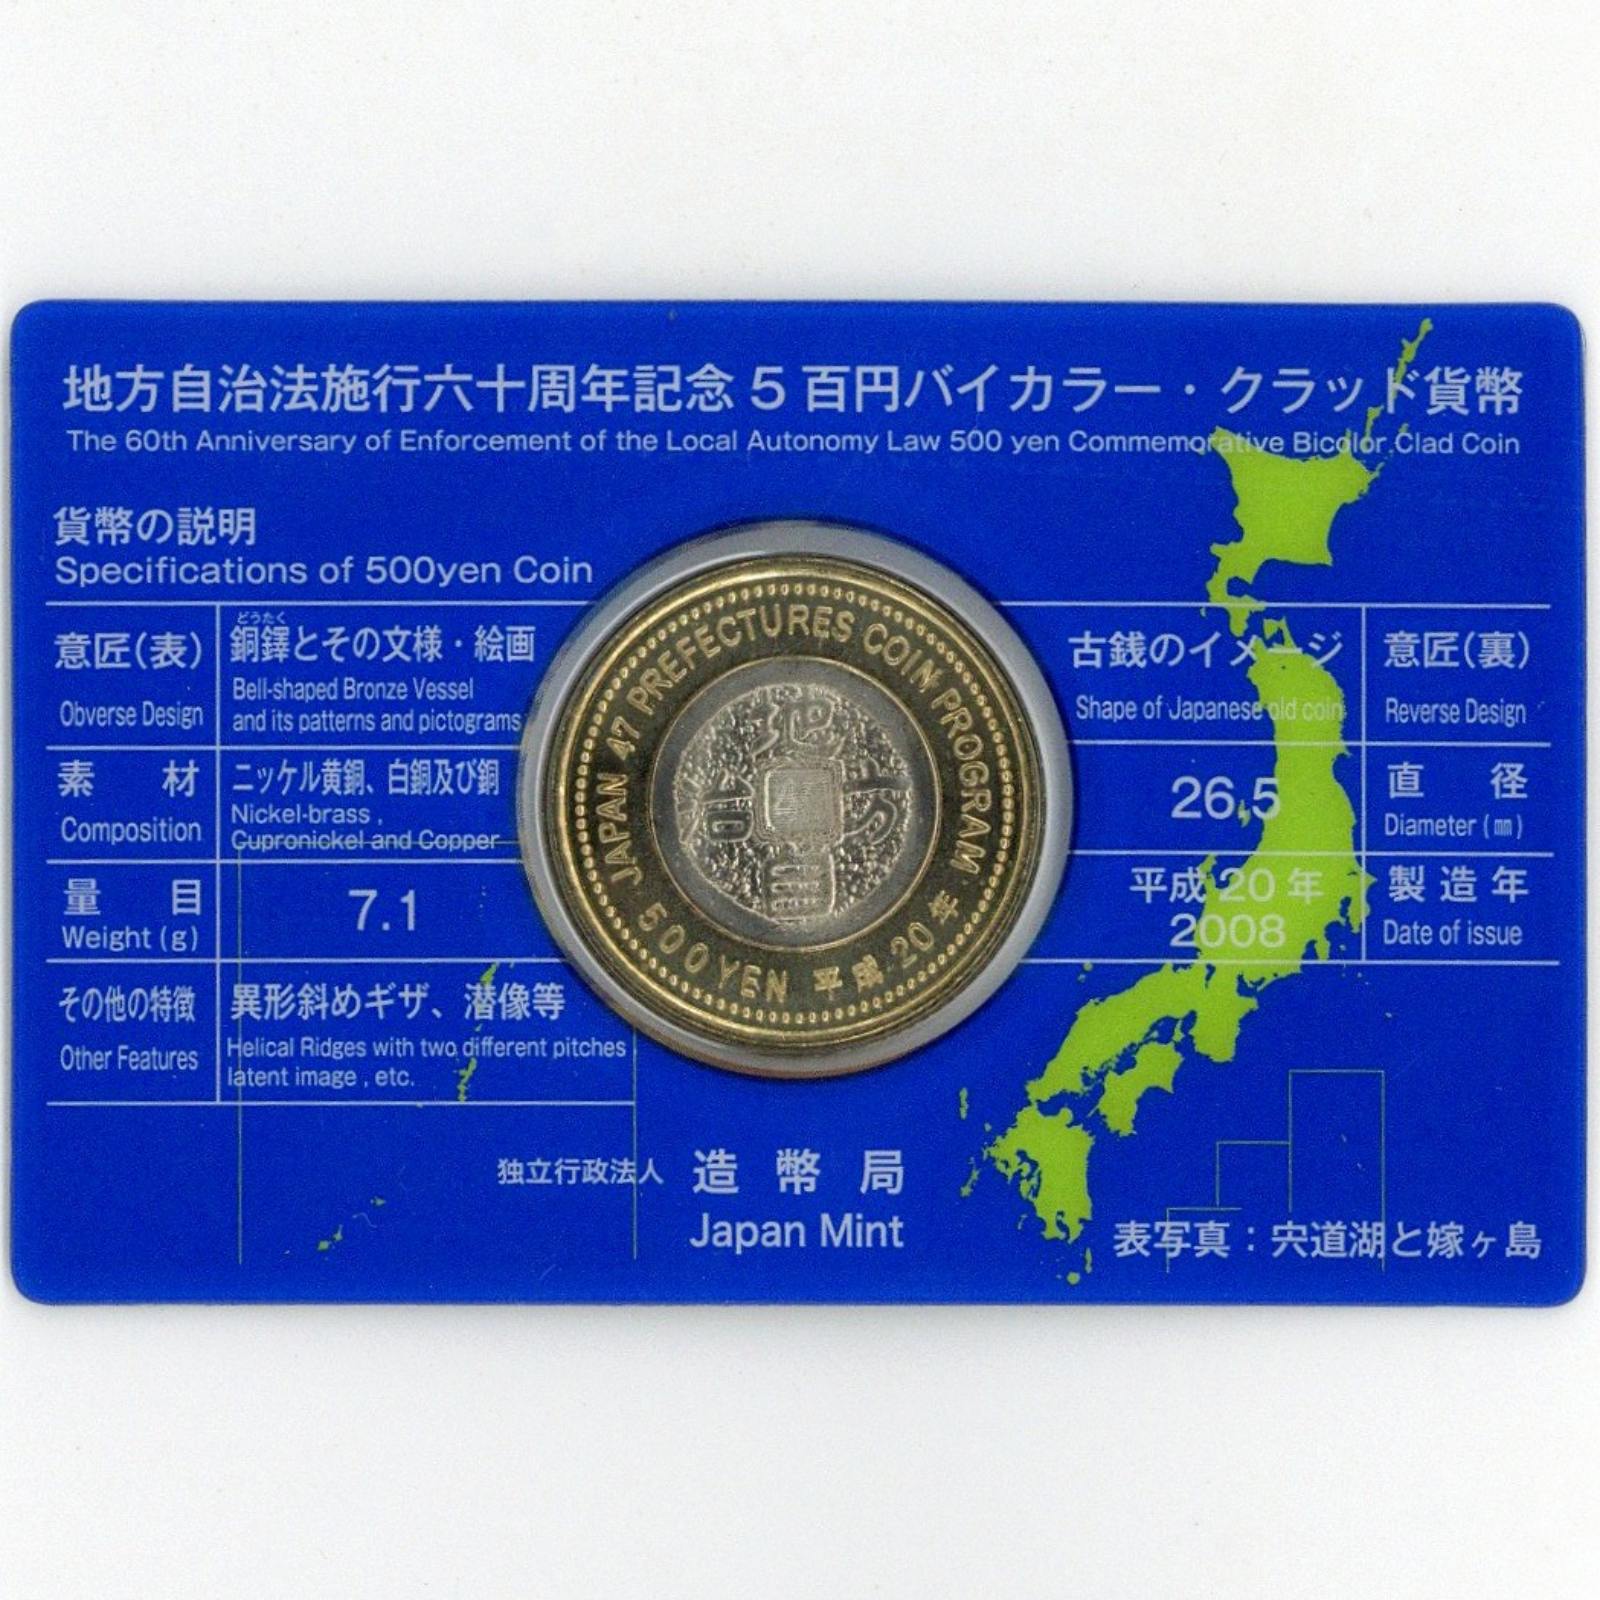 地方自治 60周年記念500円バイカラー・クラッド貨幣カード 島根県